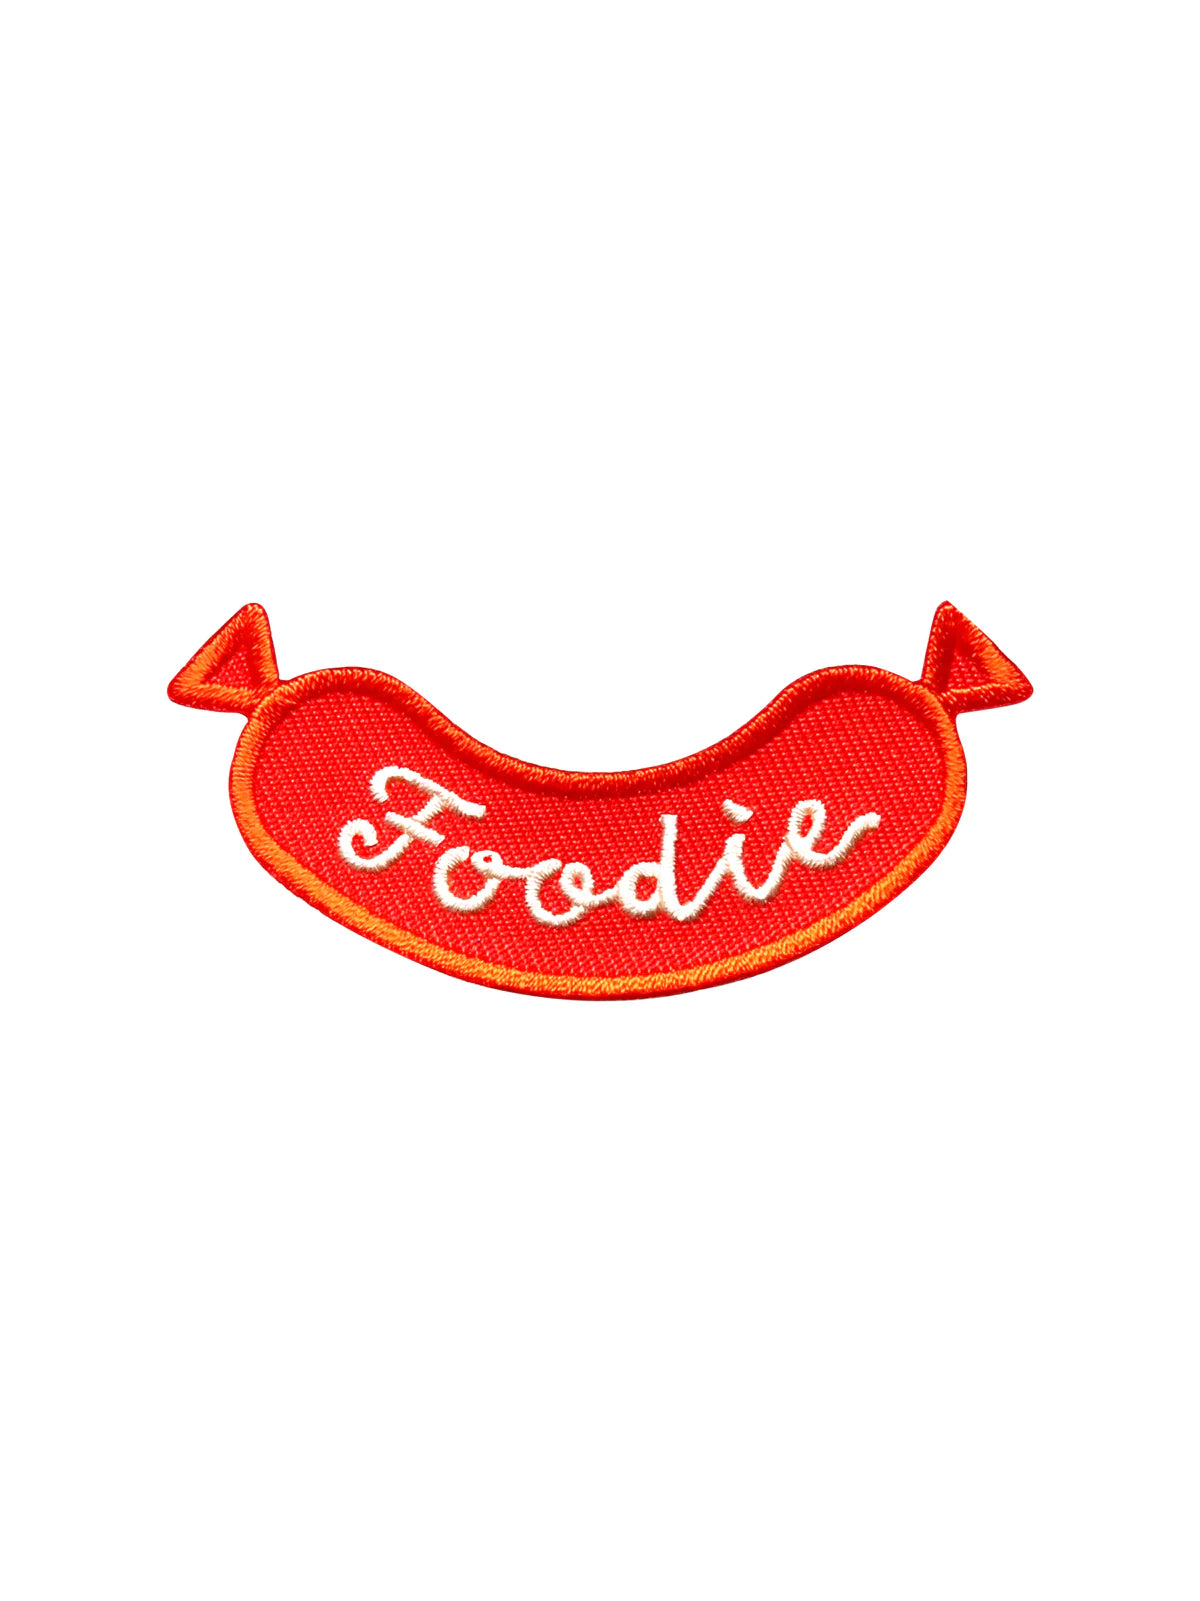 Badge "Foodie"